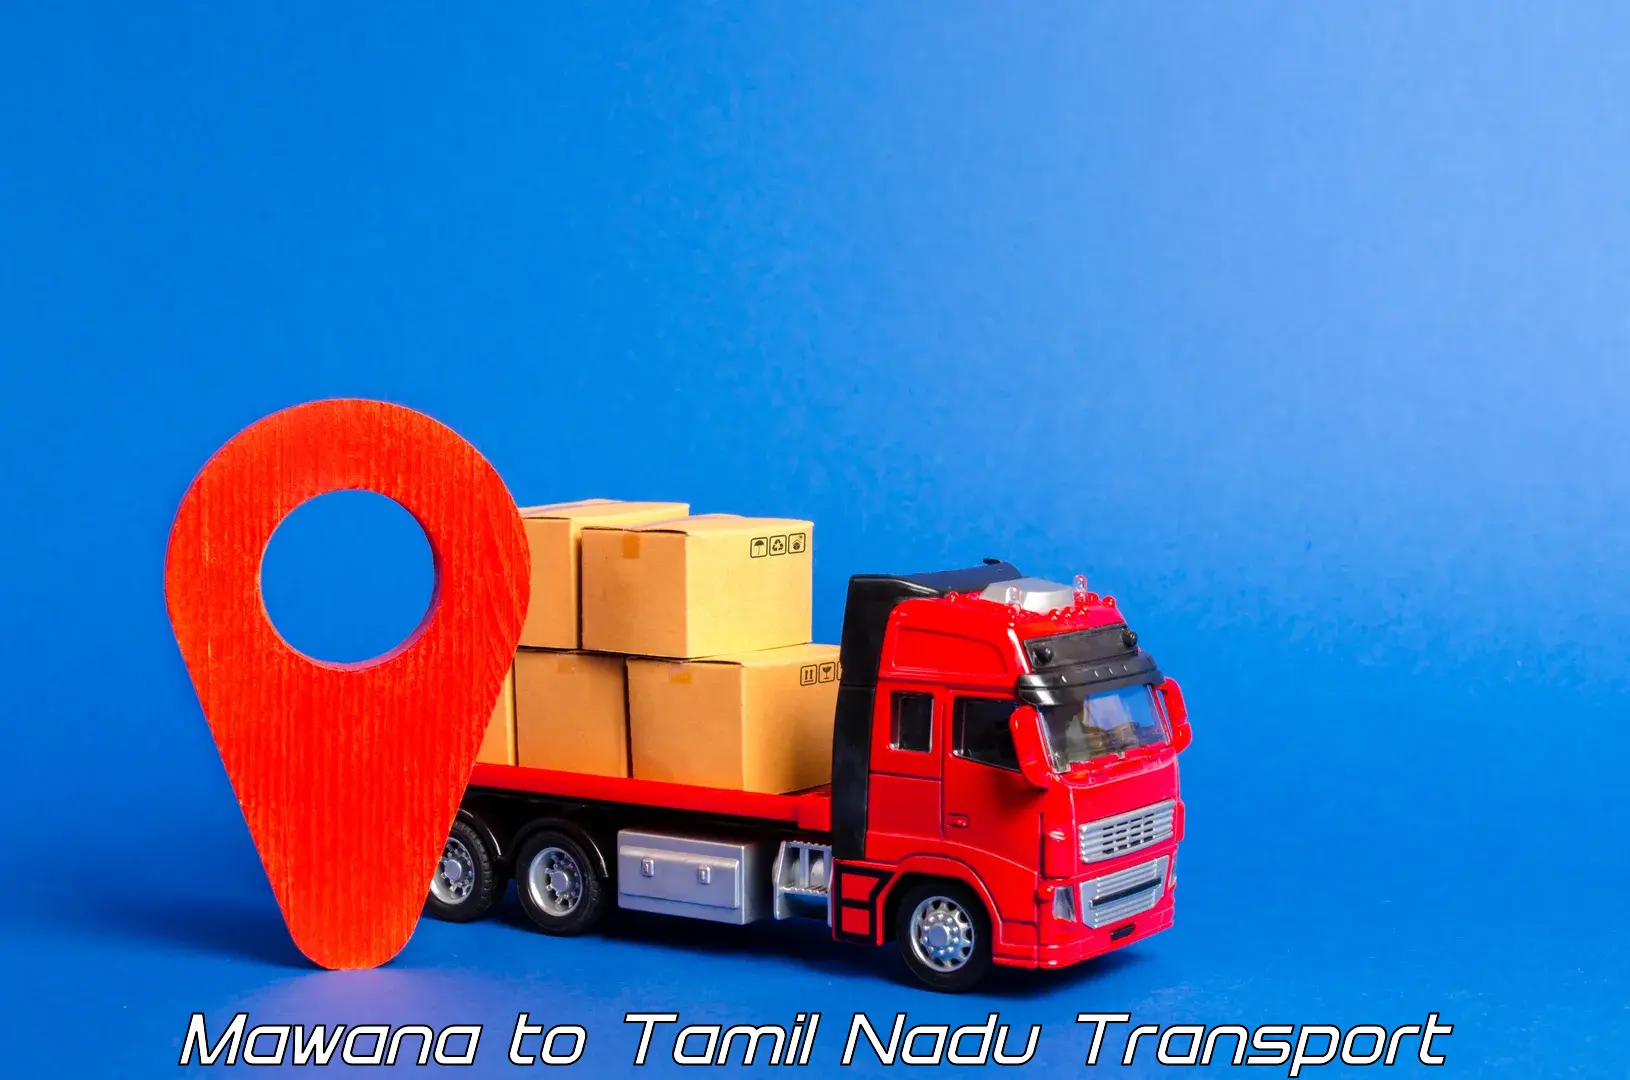 Nearby transport service Mawana to Tamil Nadu